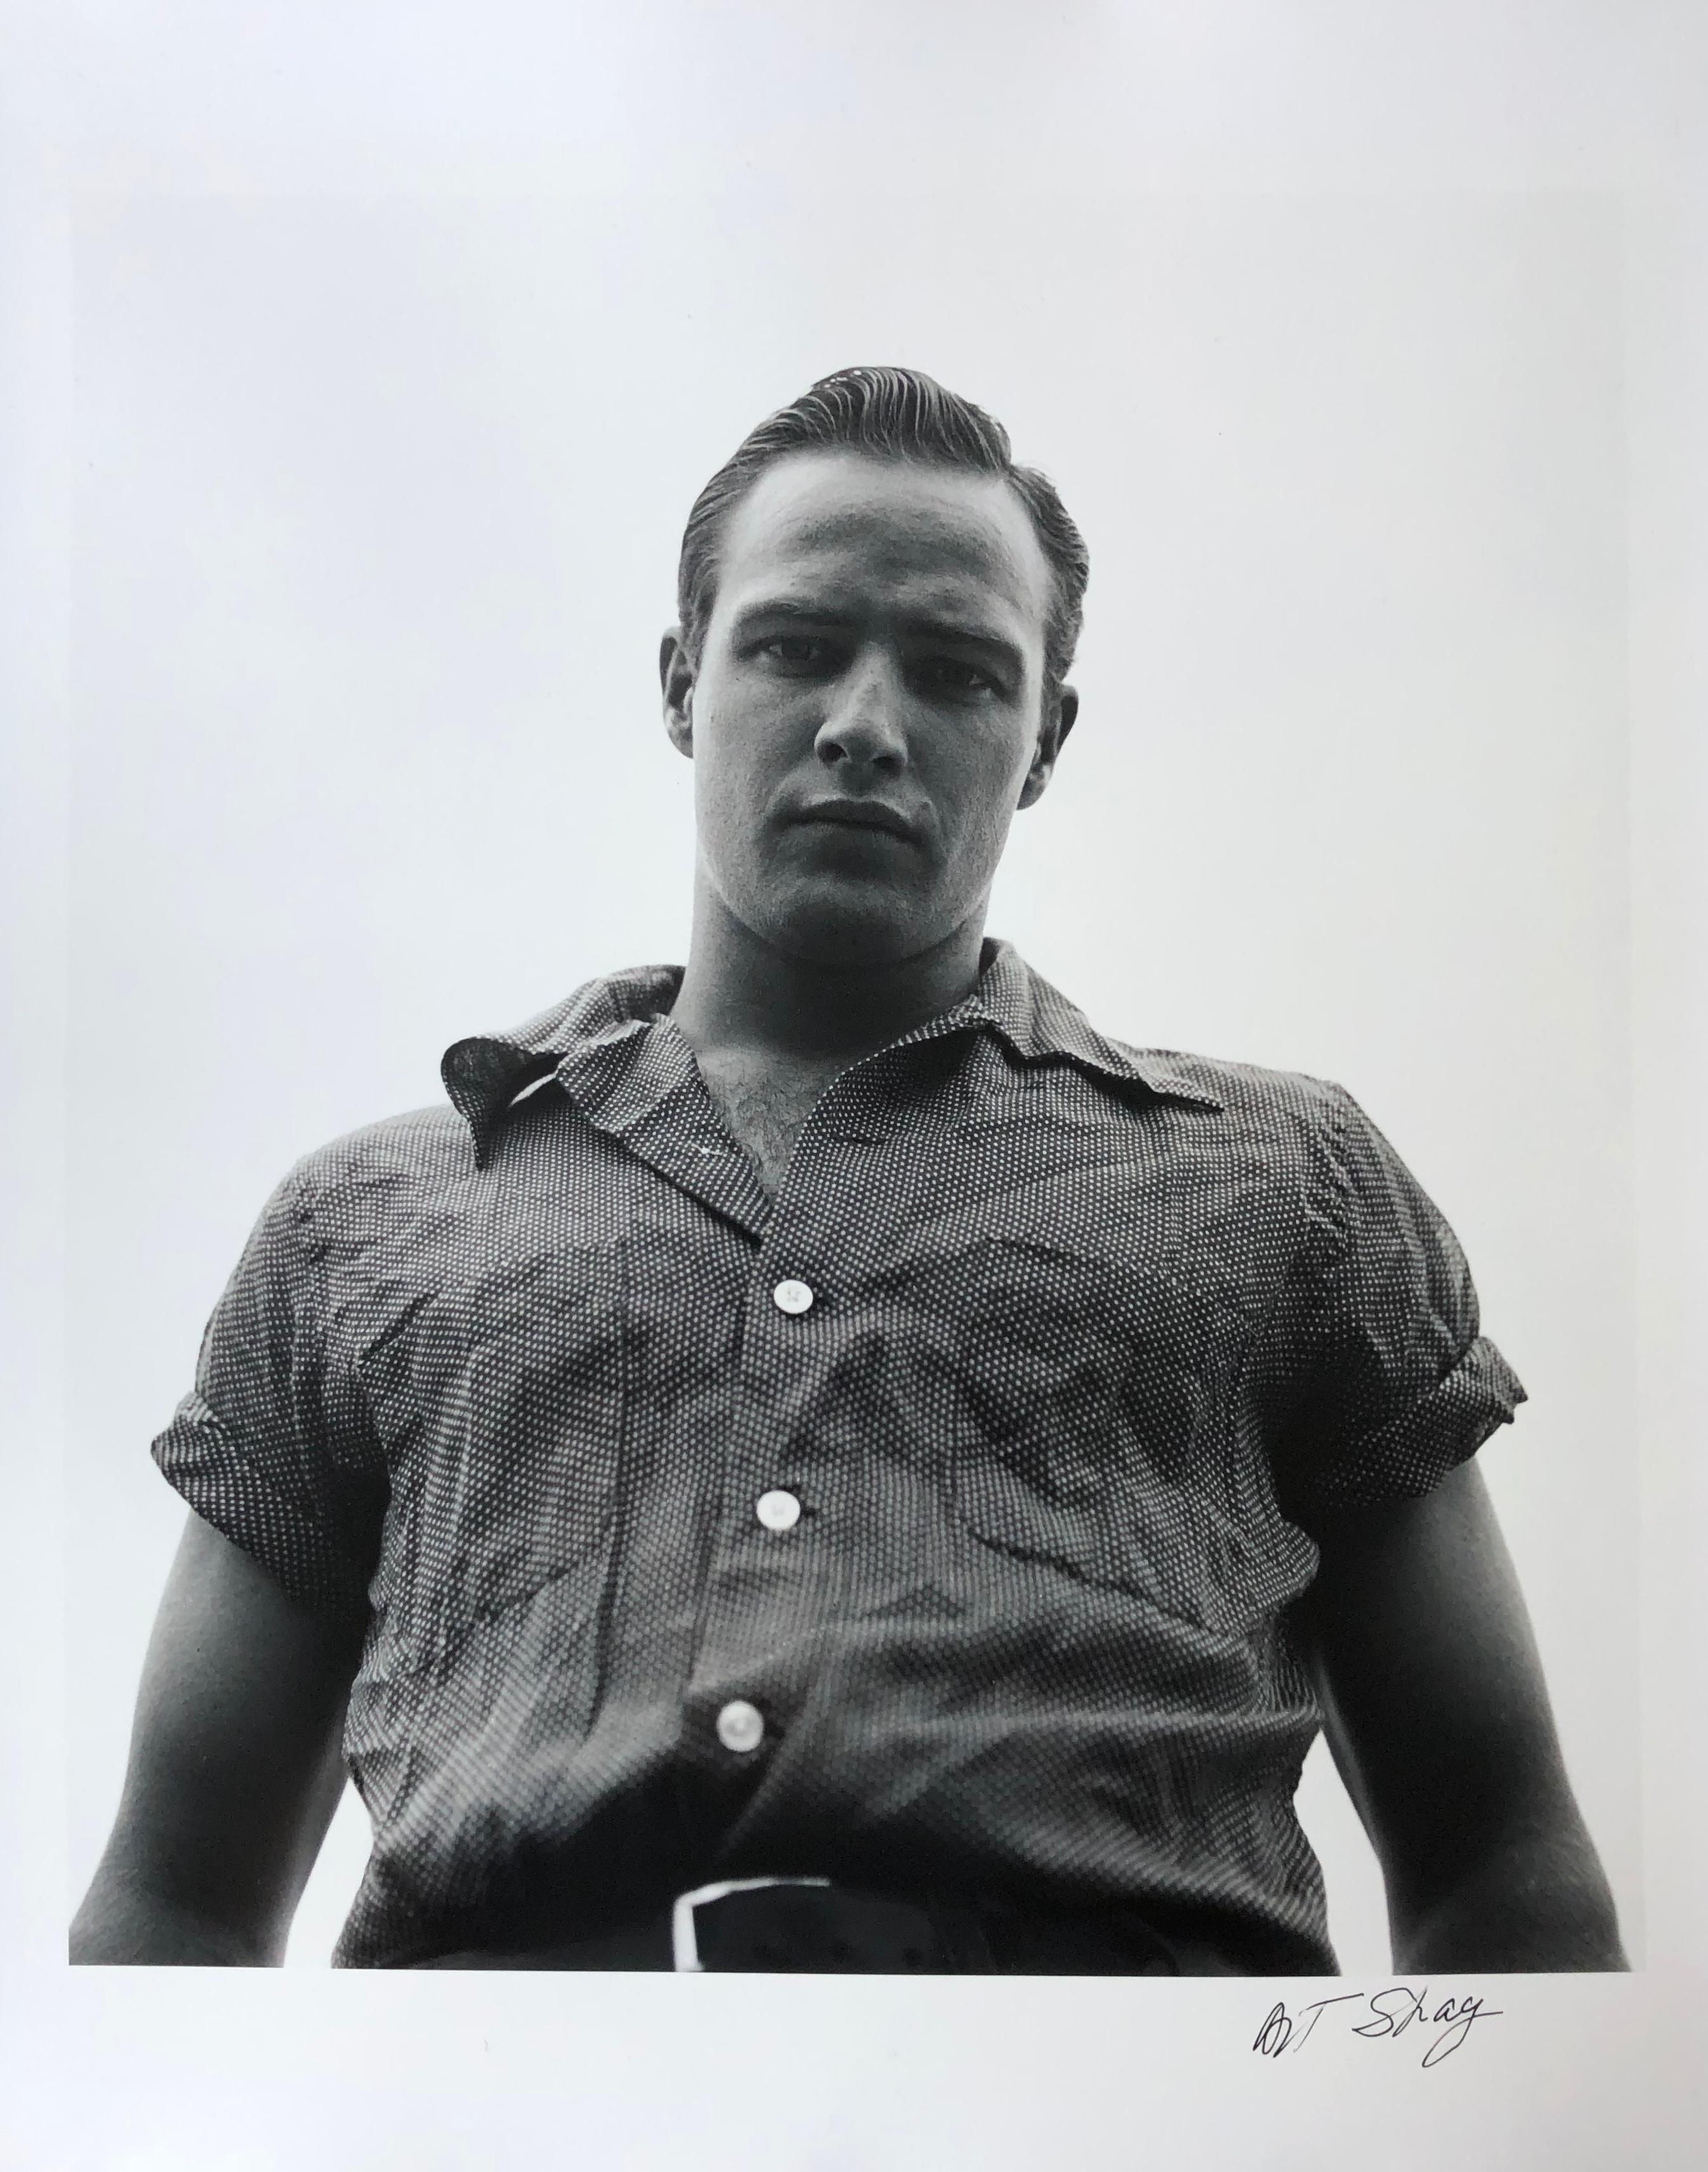 Marlon Brando, Libertyville, Illinois, 1950 - Silbergelatinedruck – Photograph von Art Shay